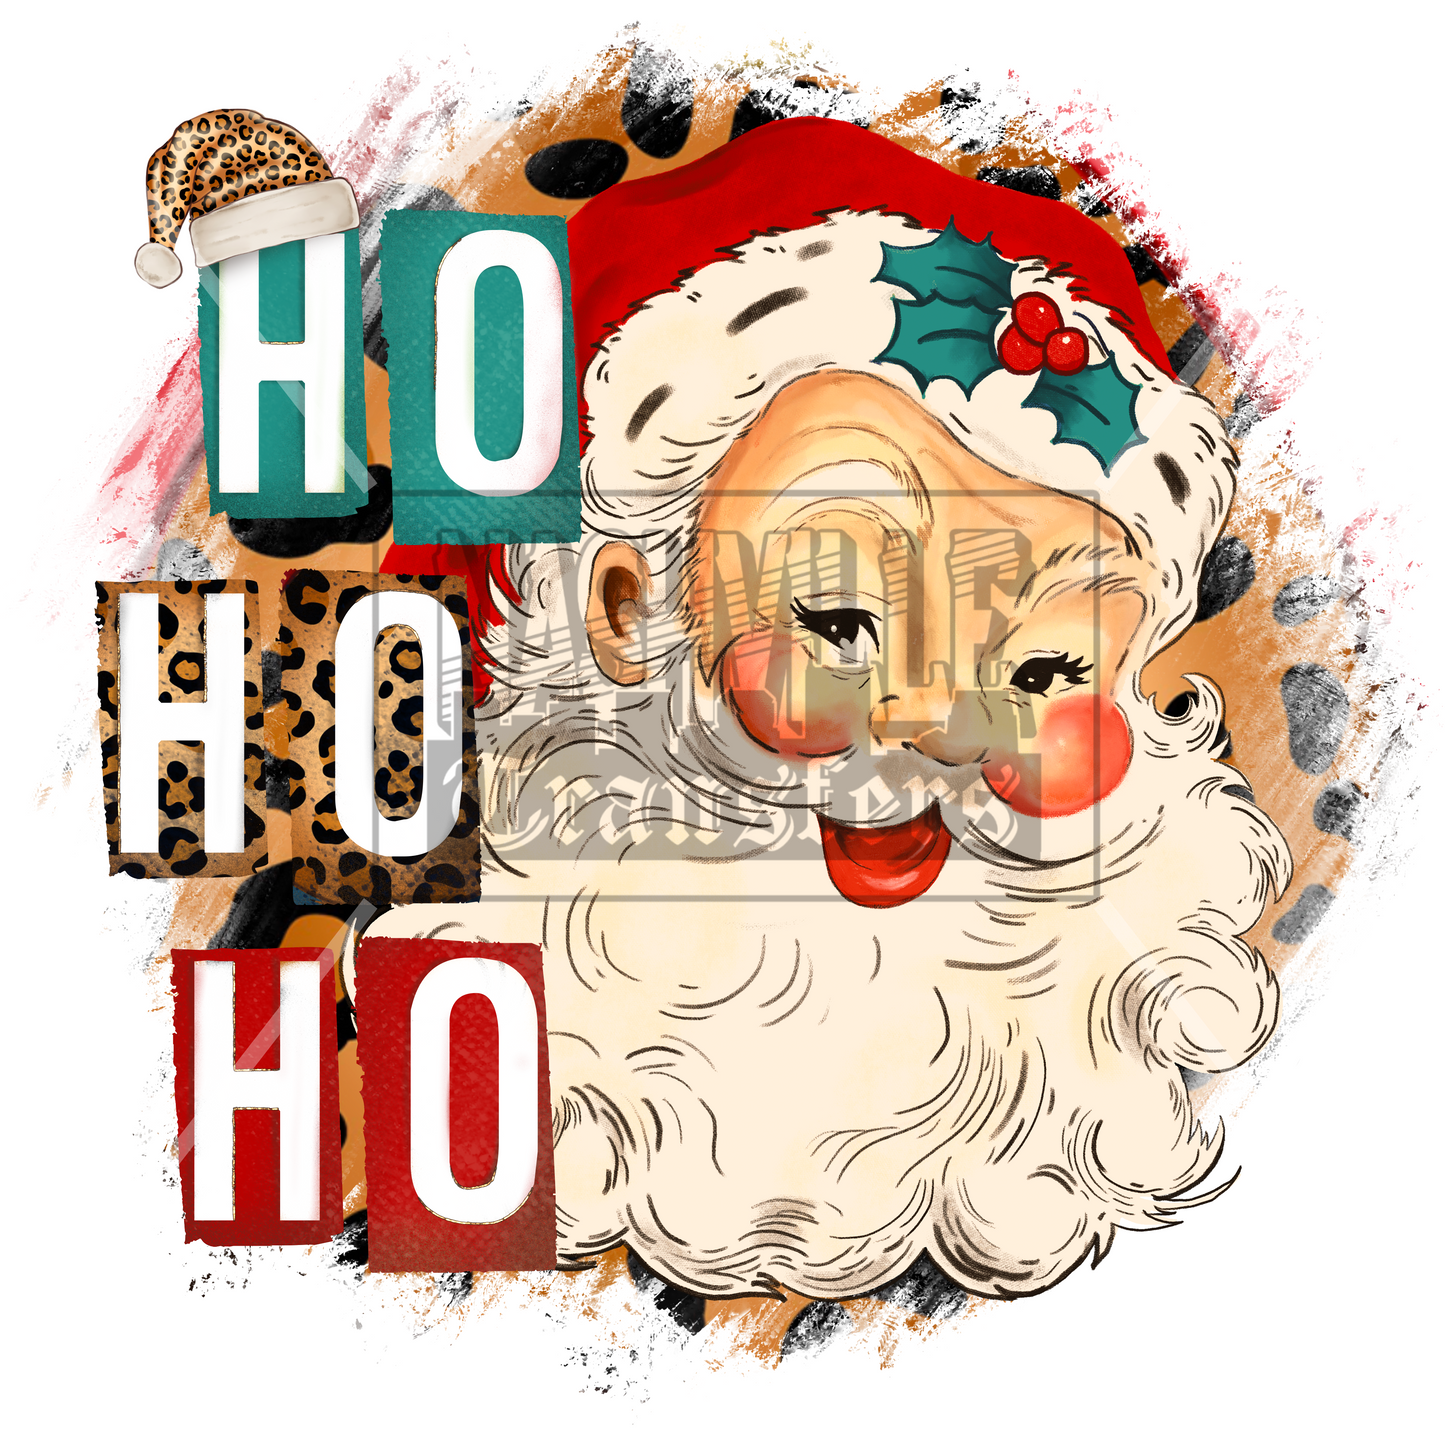 Ho, ho, ho Santa Christmas holiday stock transfers